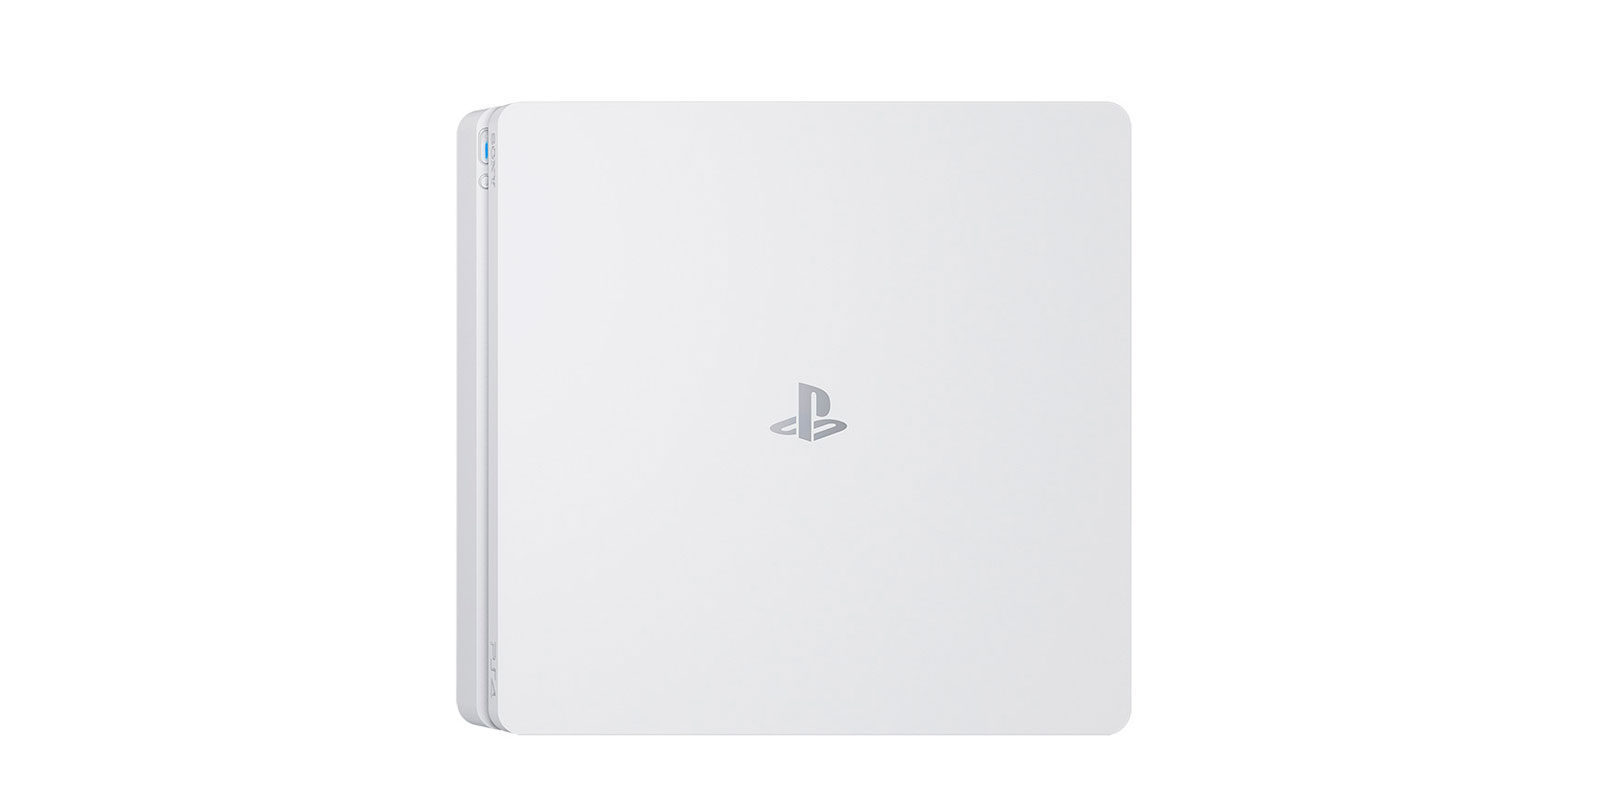 Una PS4 Slim color blanco llegará a España el próximo 24 de enero